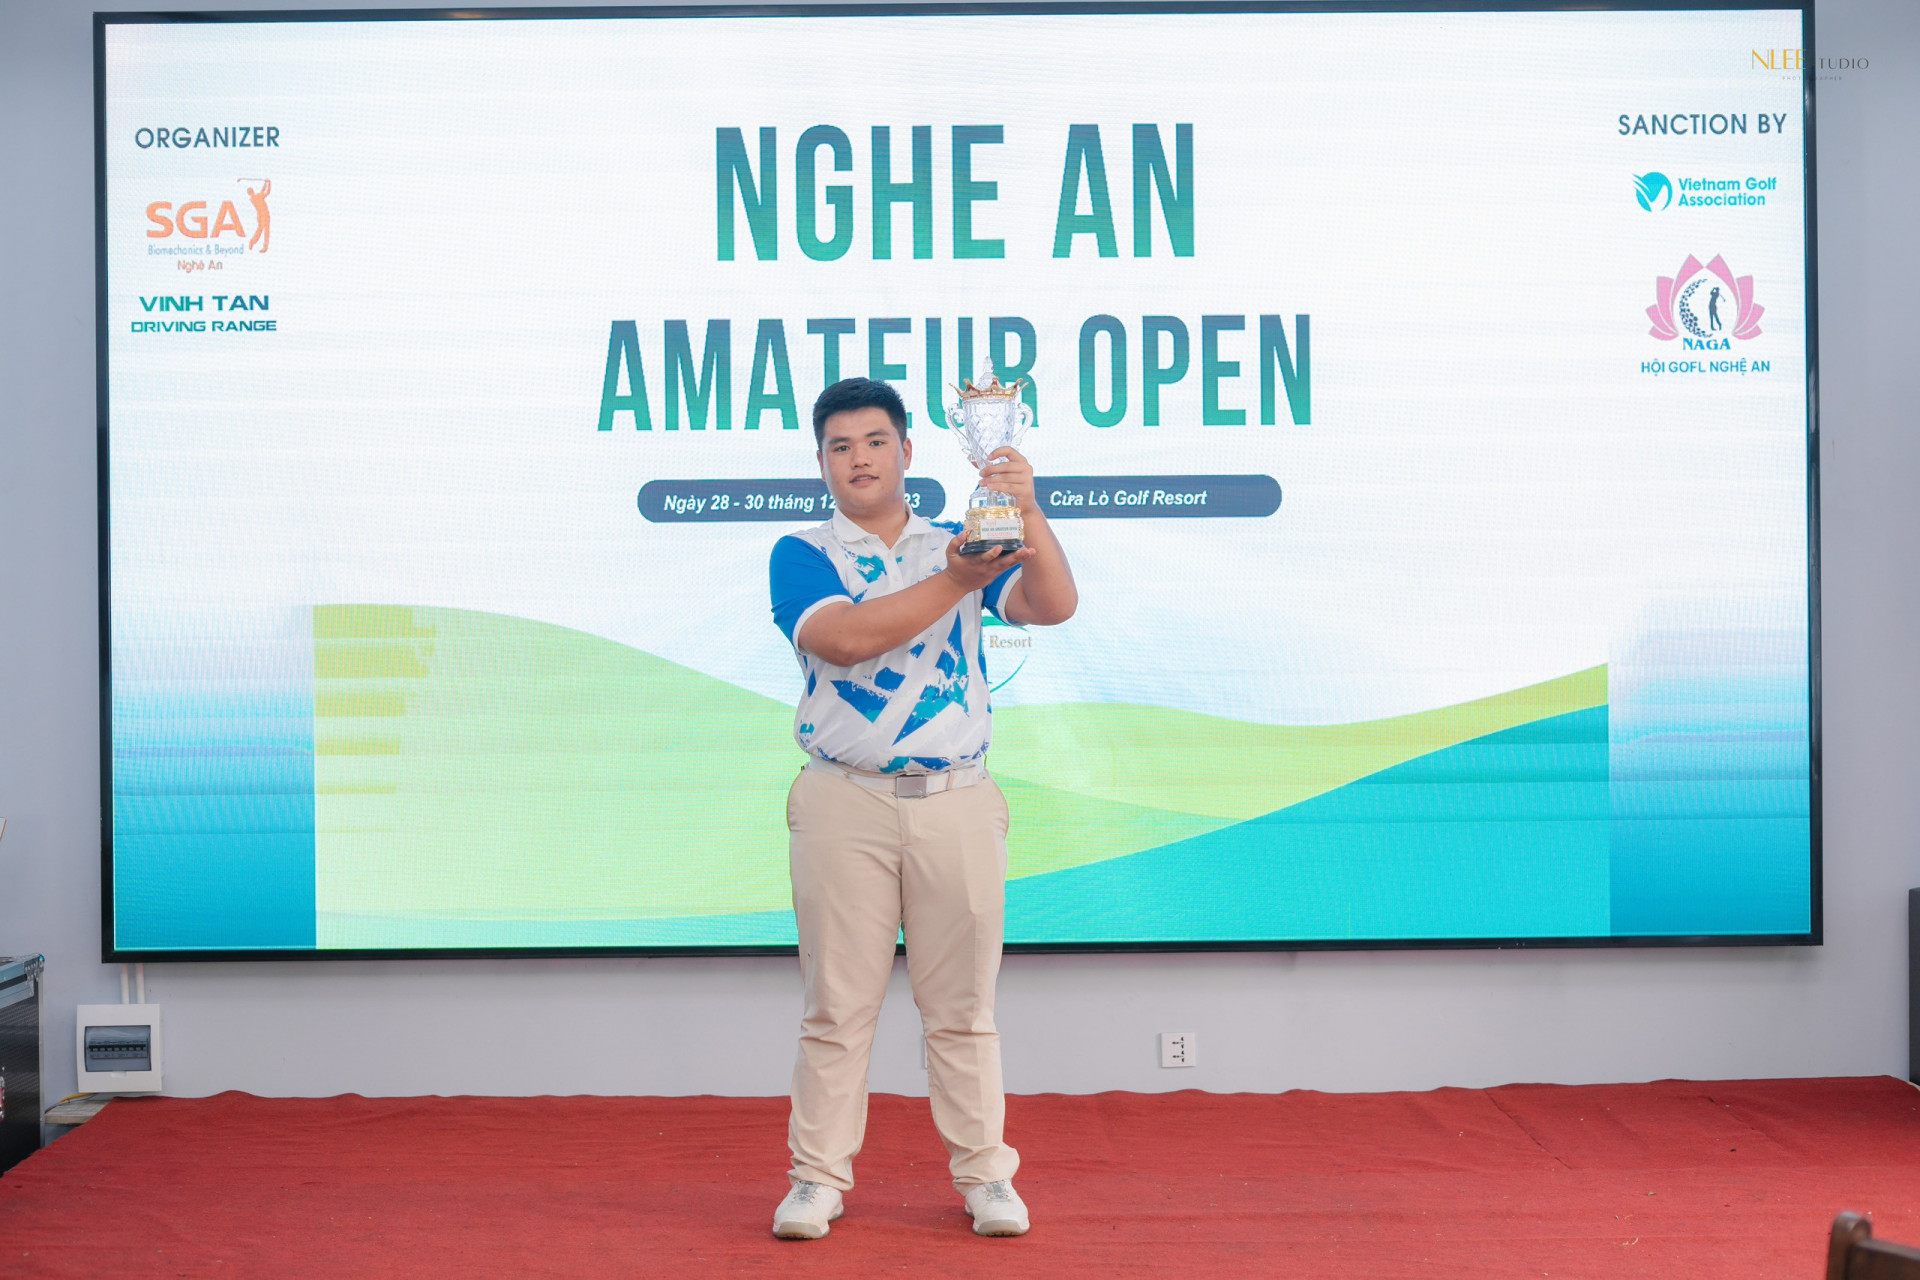 Phạm Thế Nam - golfer trẻ đầu tiên của Nghệ An có tên trên bảng xếp hạng thế giới